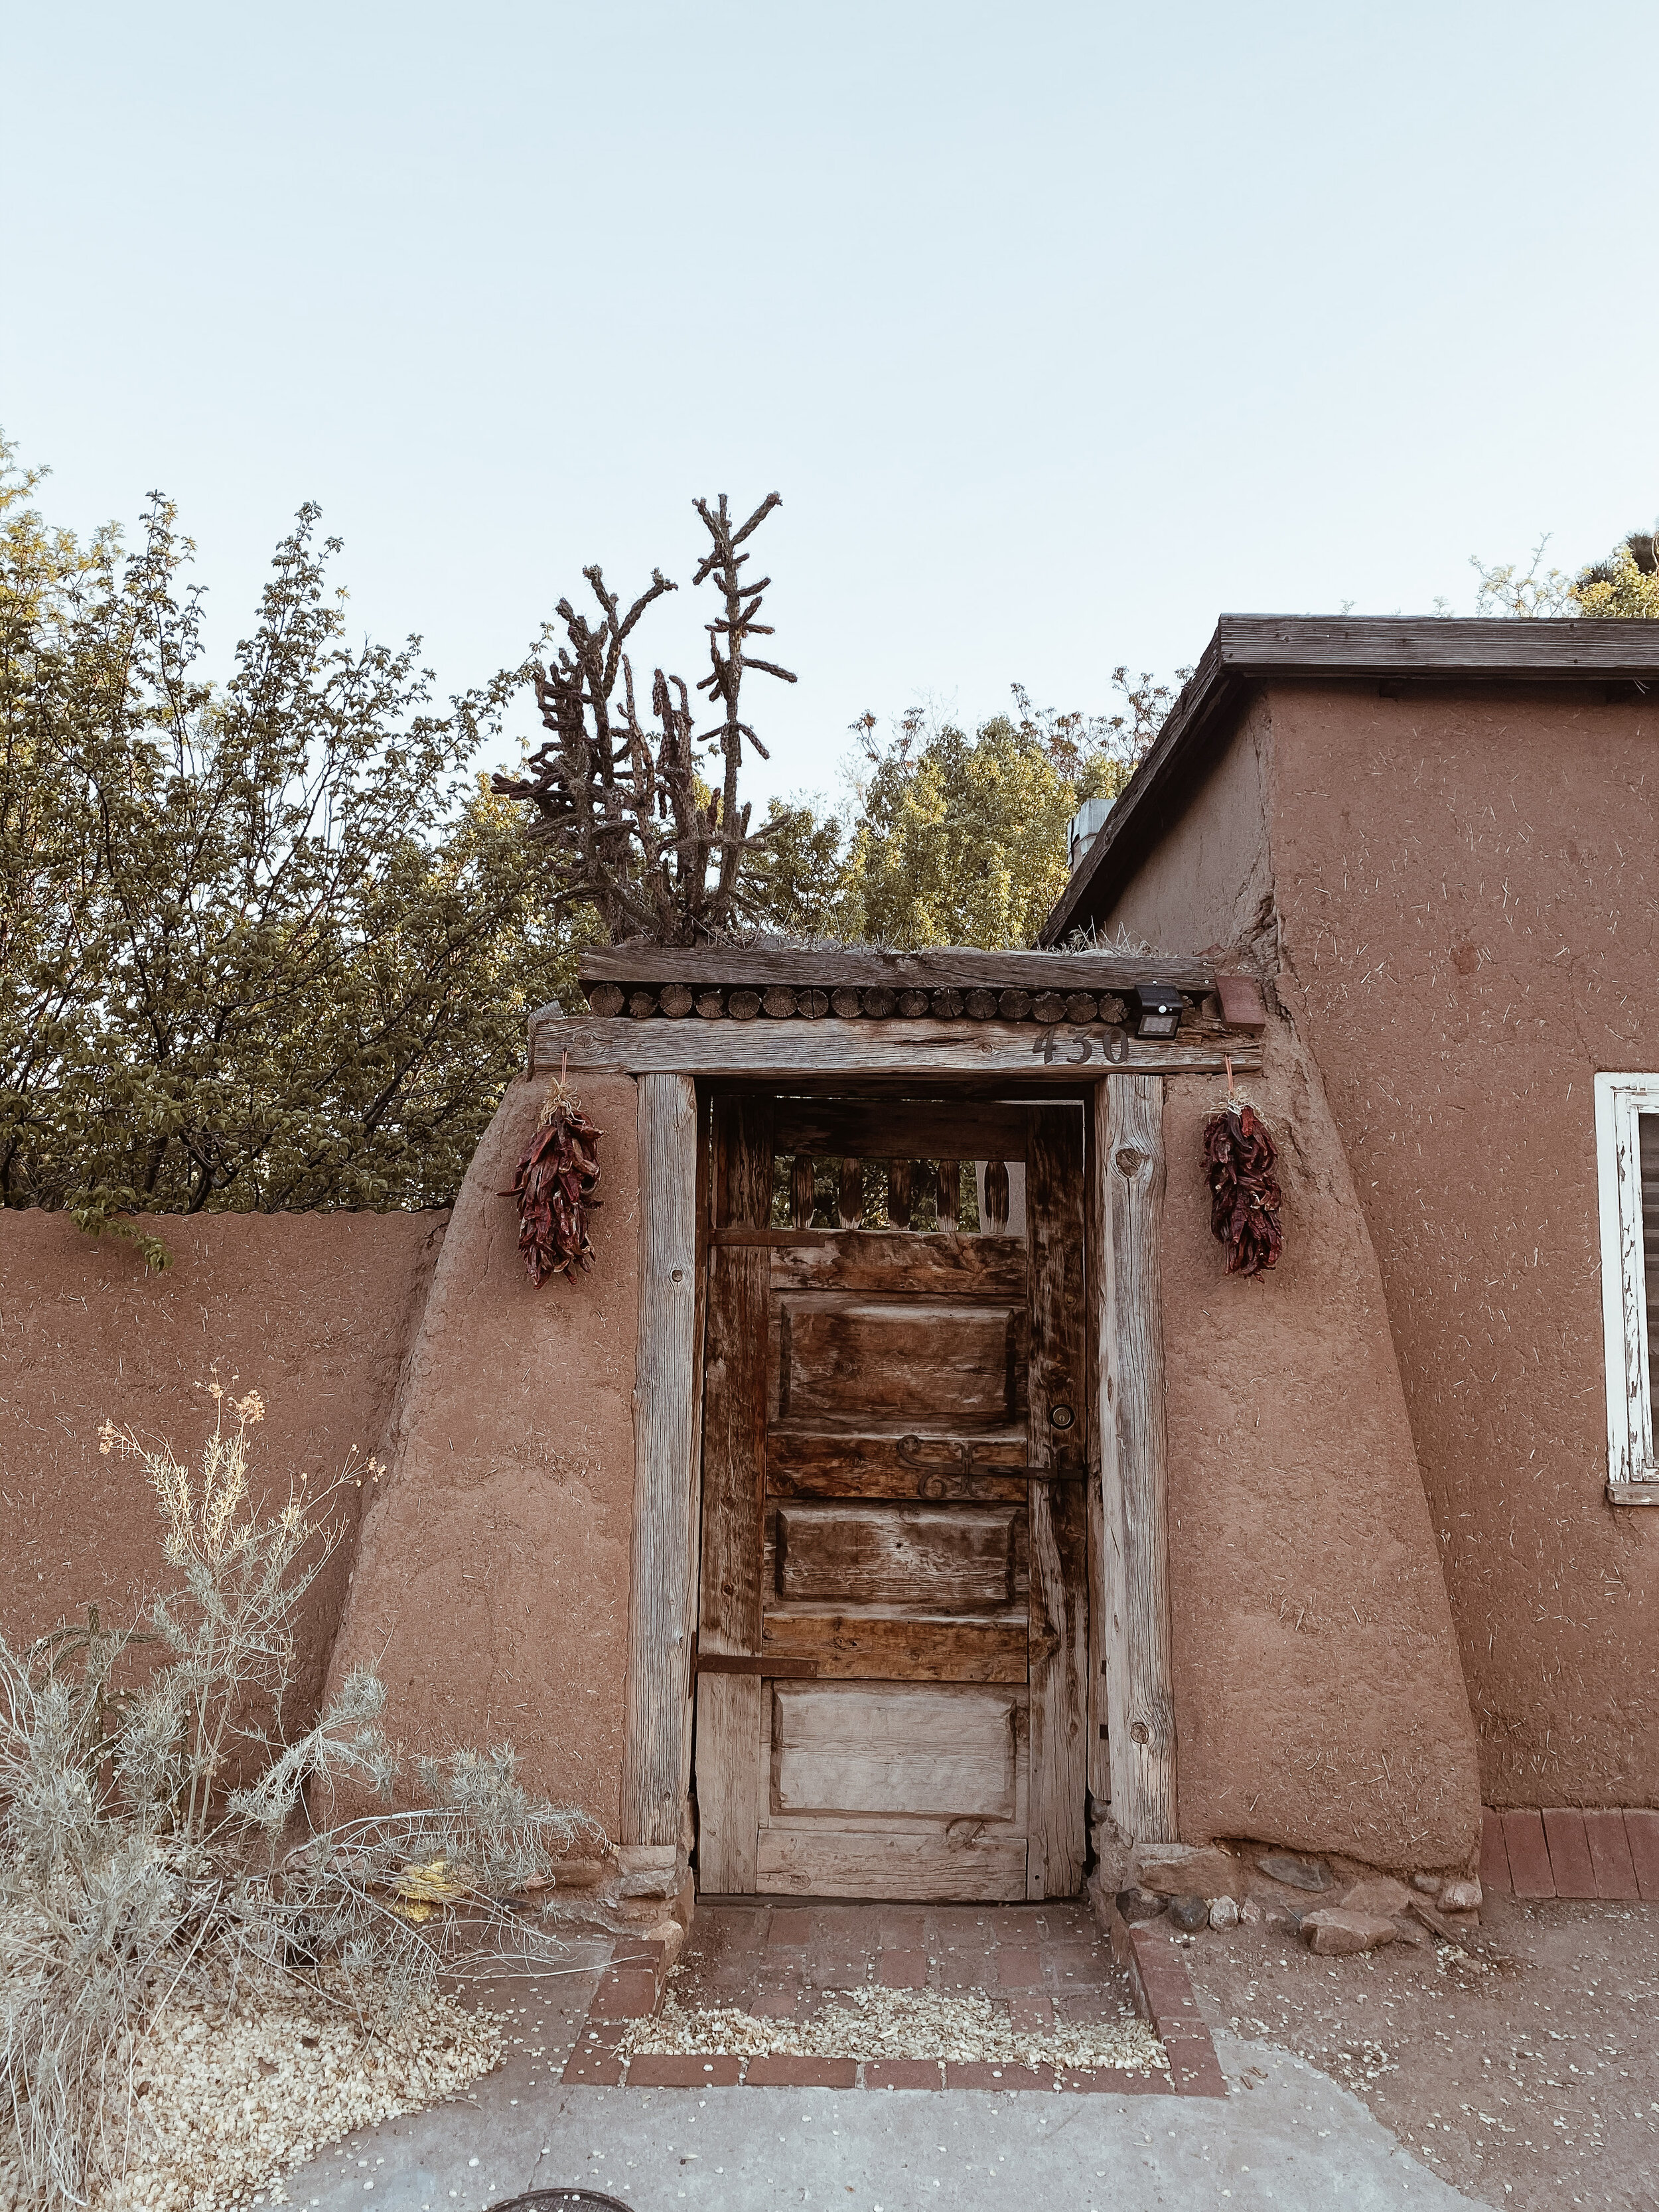 doors of Santa Fe, New Mexico